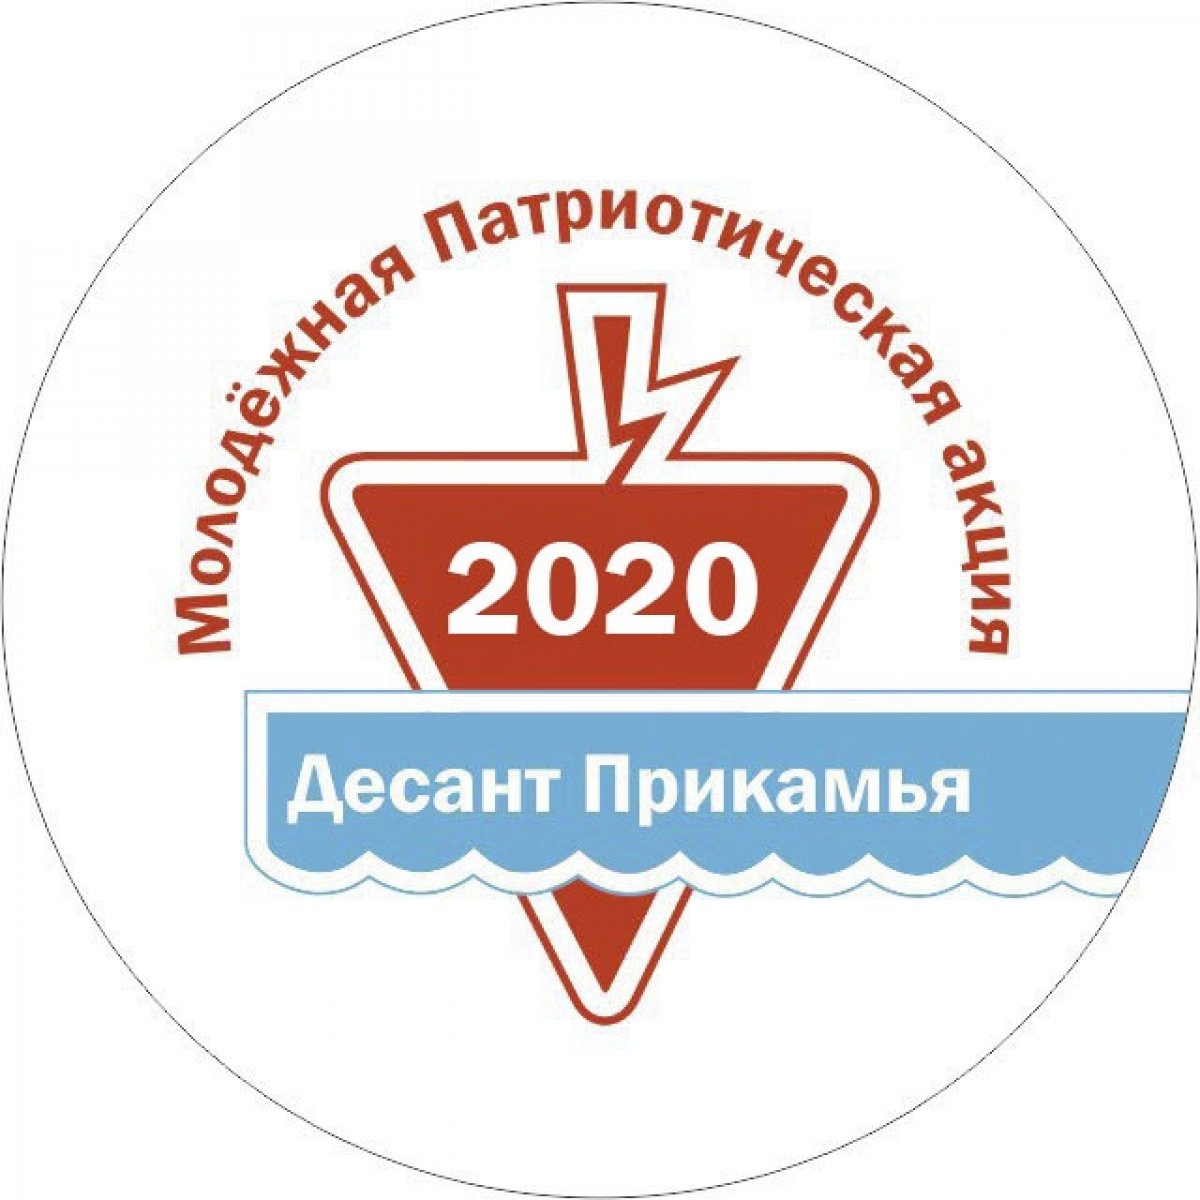 Десант Прикамья - 2020 ⭐